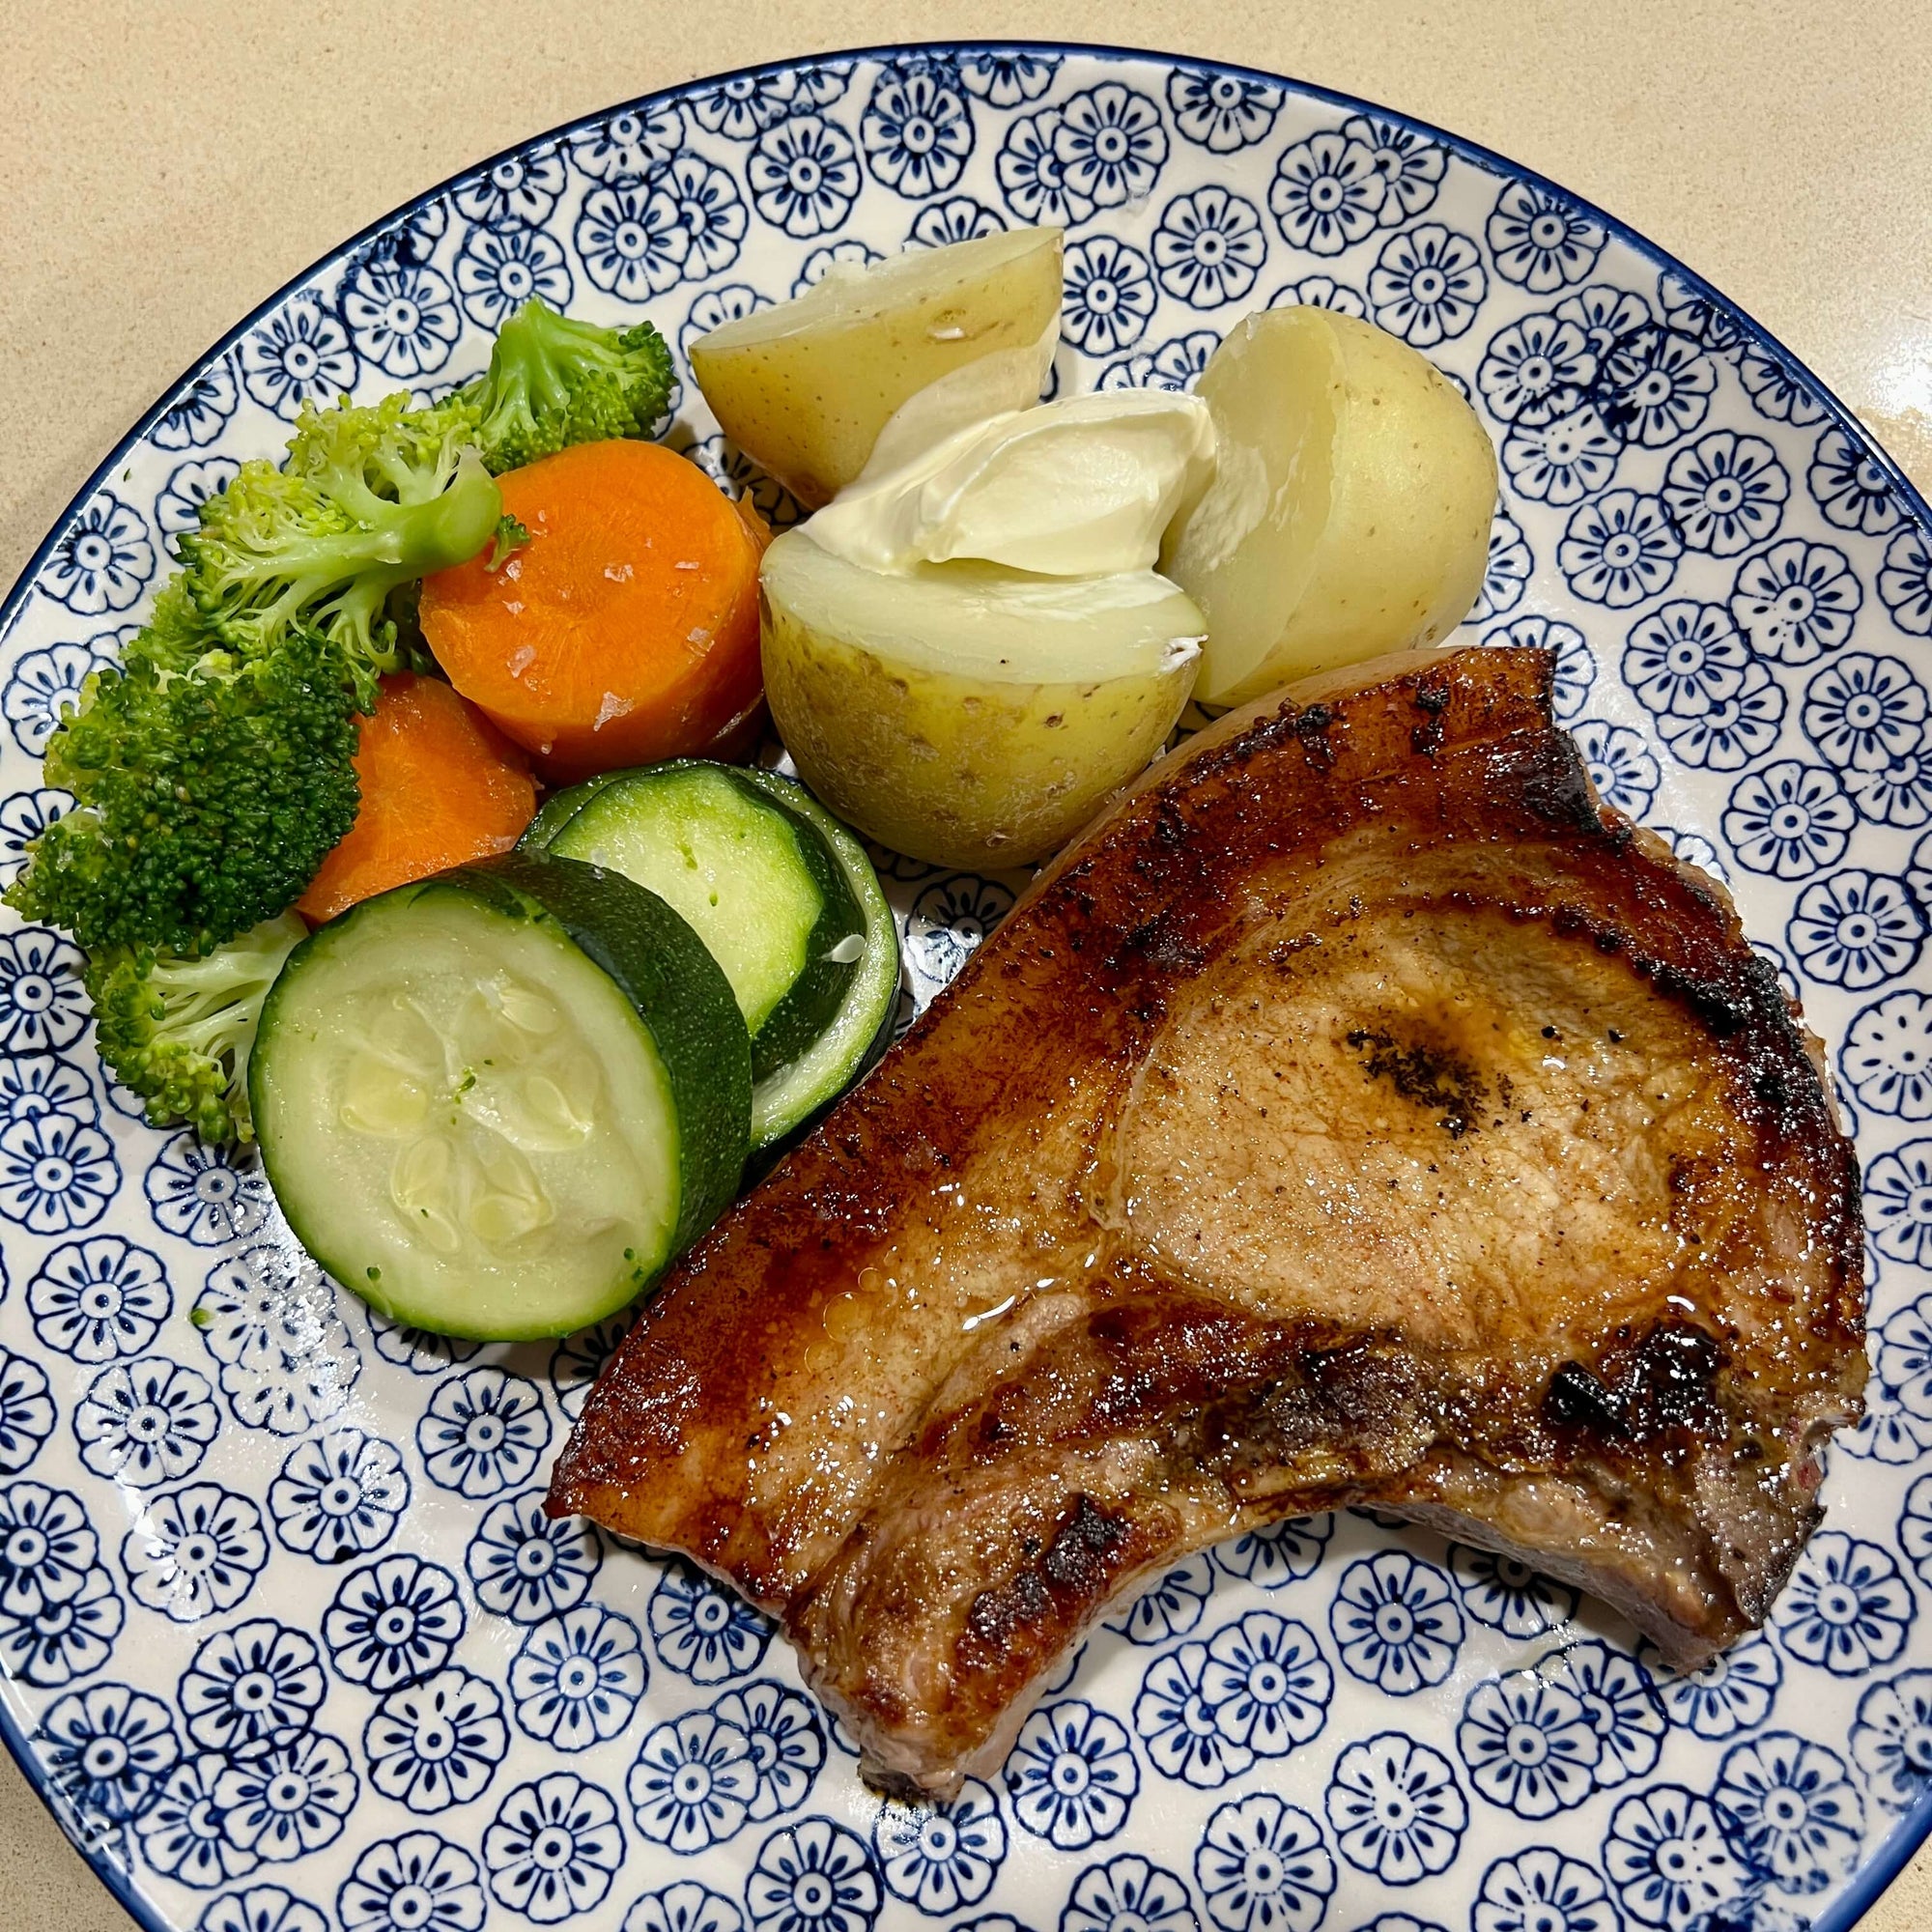 Seasoned Pork Loin Steaks